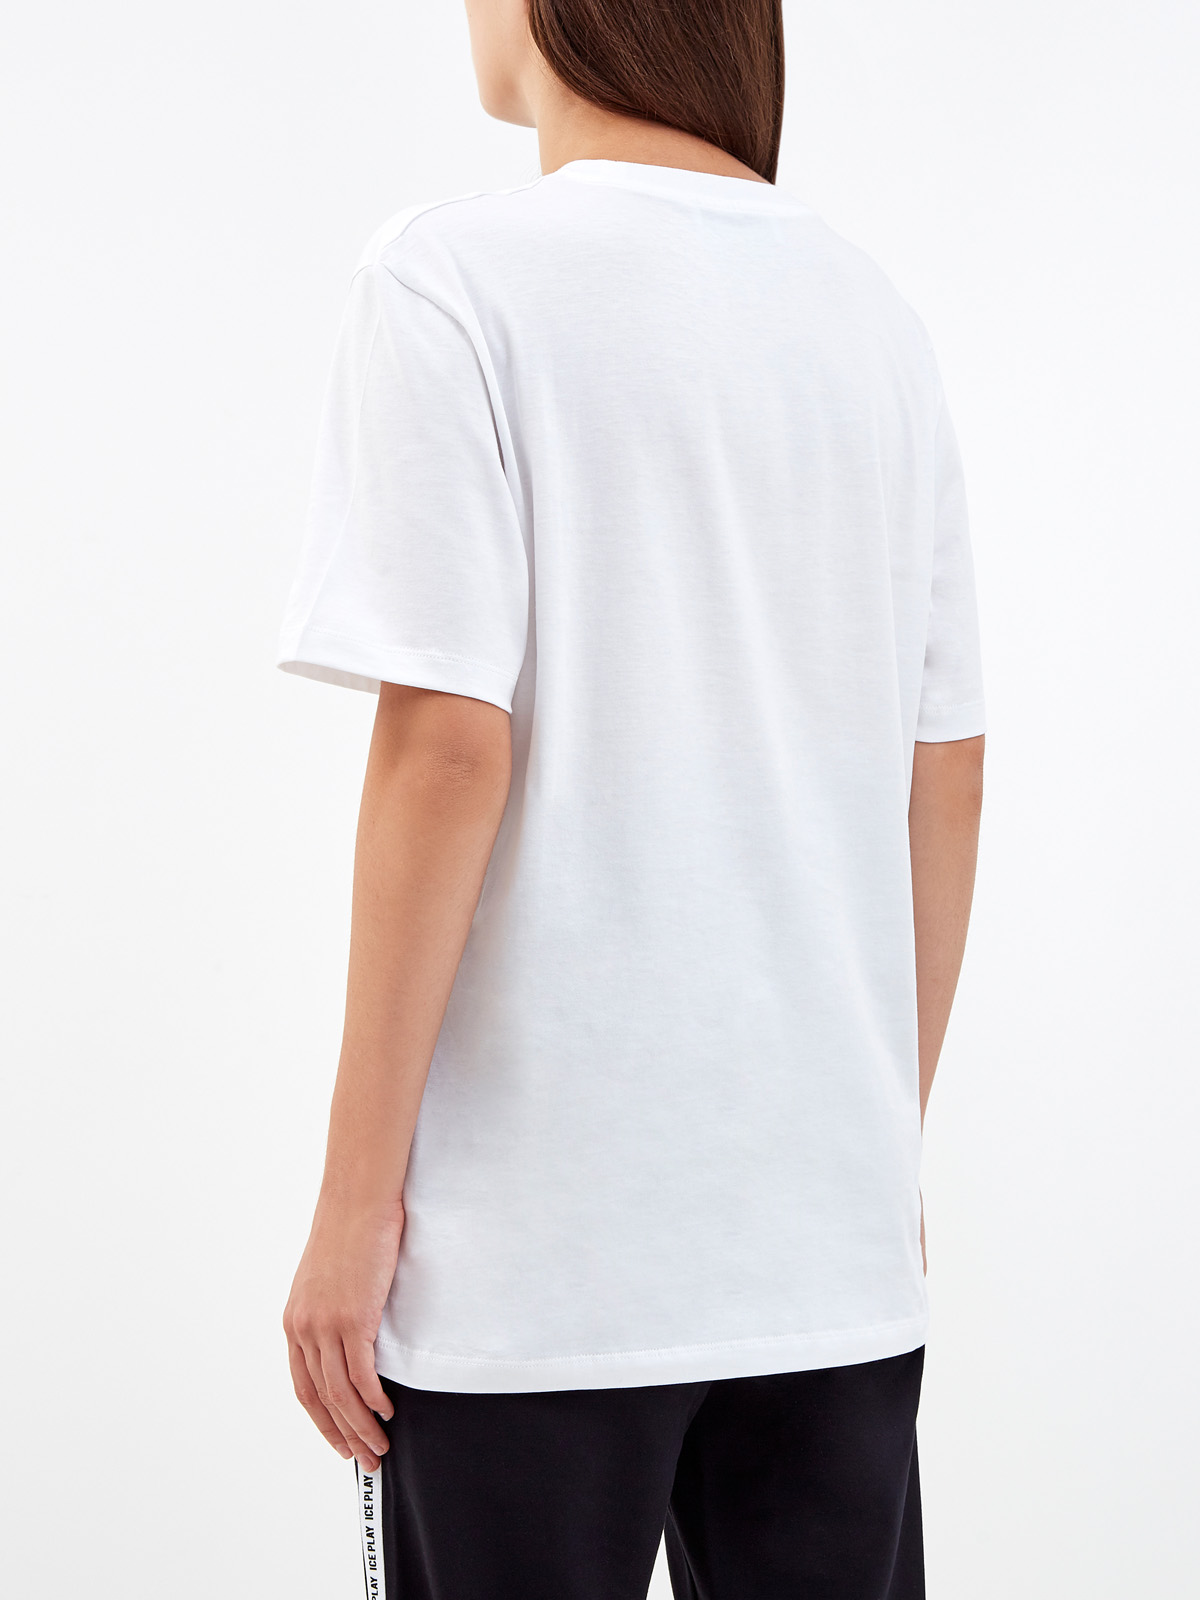 Белая футболка удлиненного кроя с принтом ICE PLAY, цвет белый, размер XS;S;M;L - фото 4